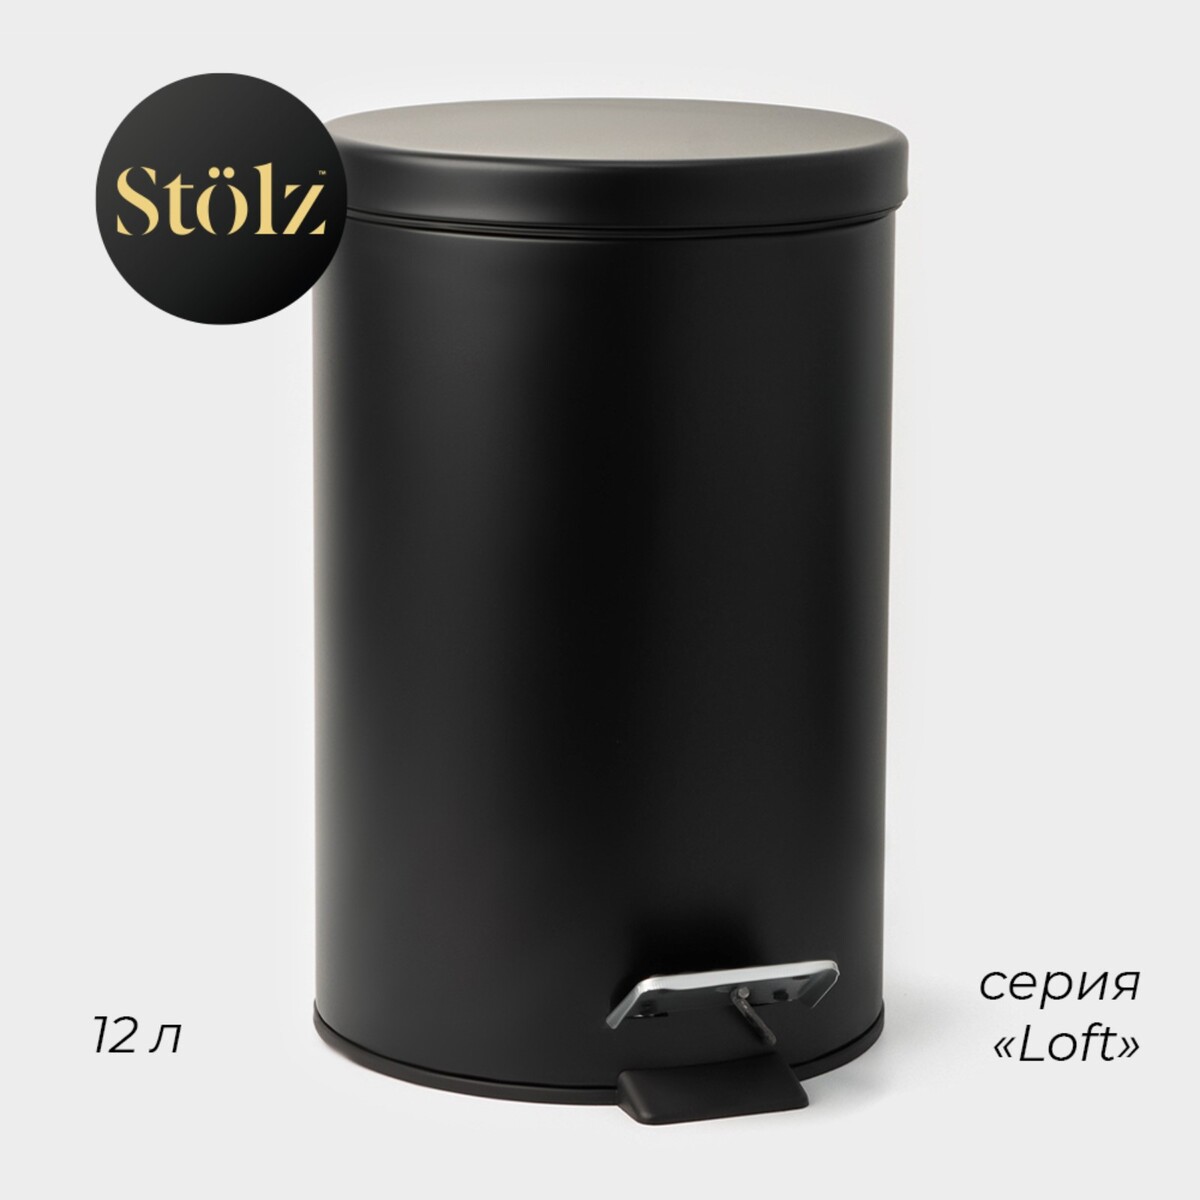 Ведро мусорное с педалью штольц stölz, 12 л, нержавеющая сталь, цвет черный Stölz